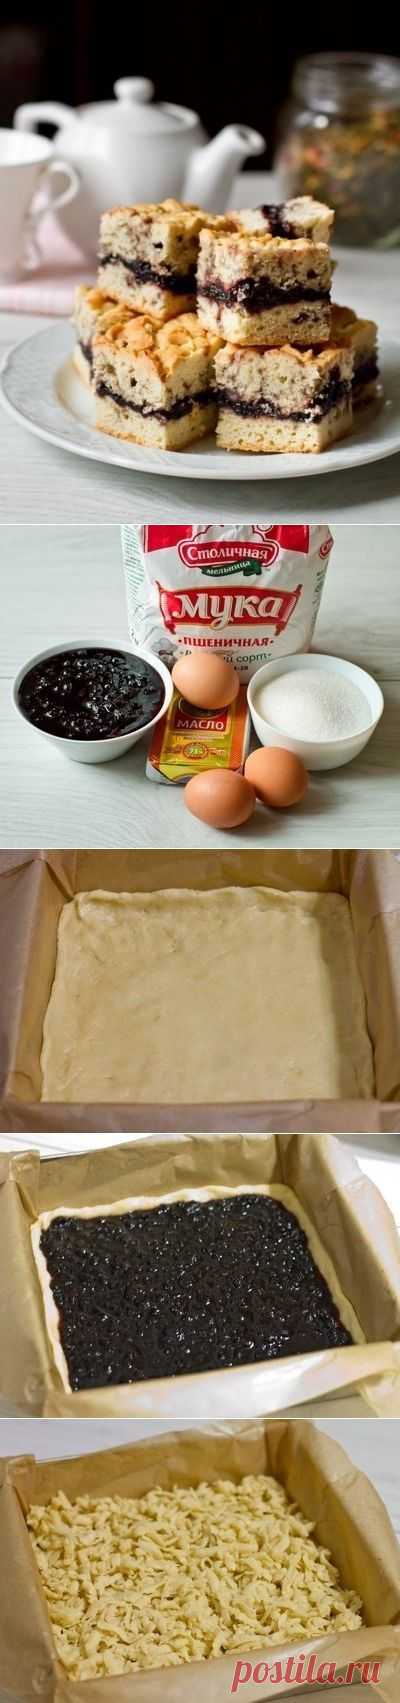 Как приготовить тертый пирог с вареньем - рецепт, ингридиенты и фотографии